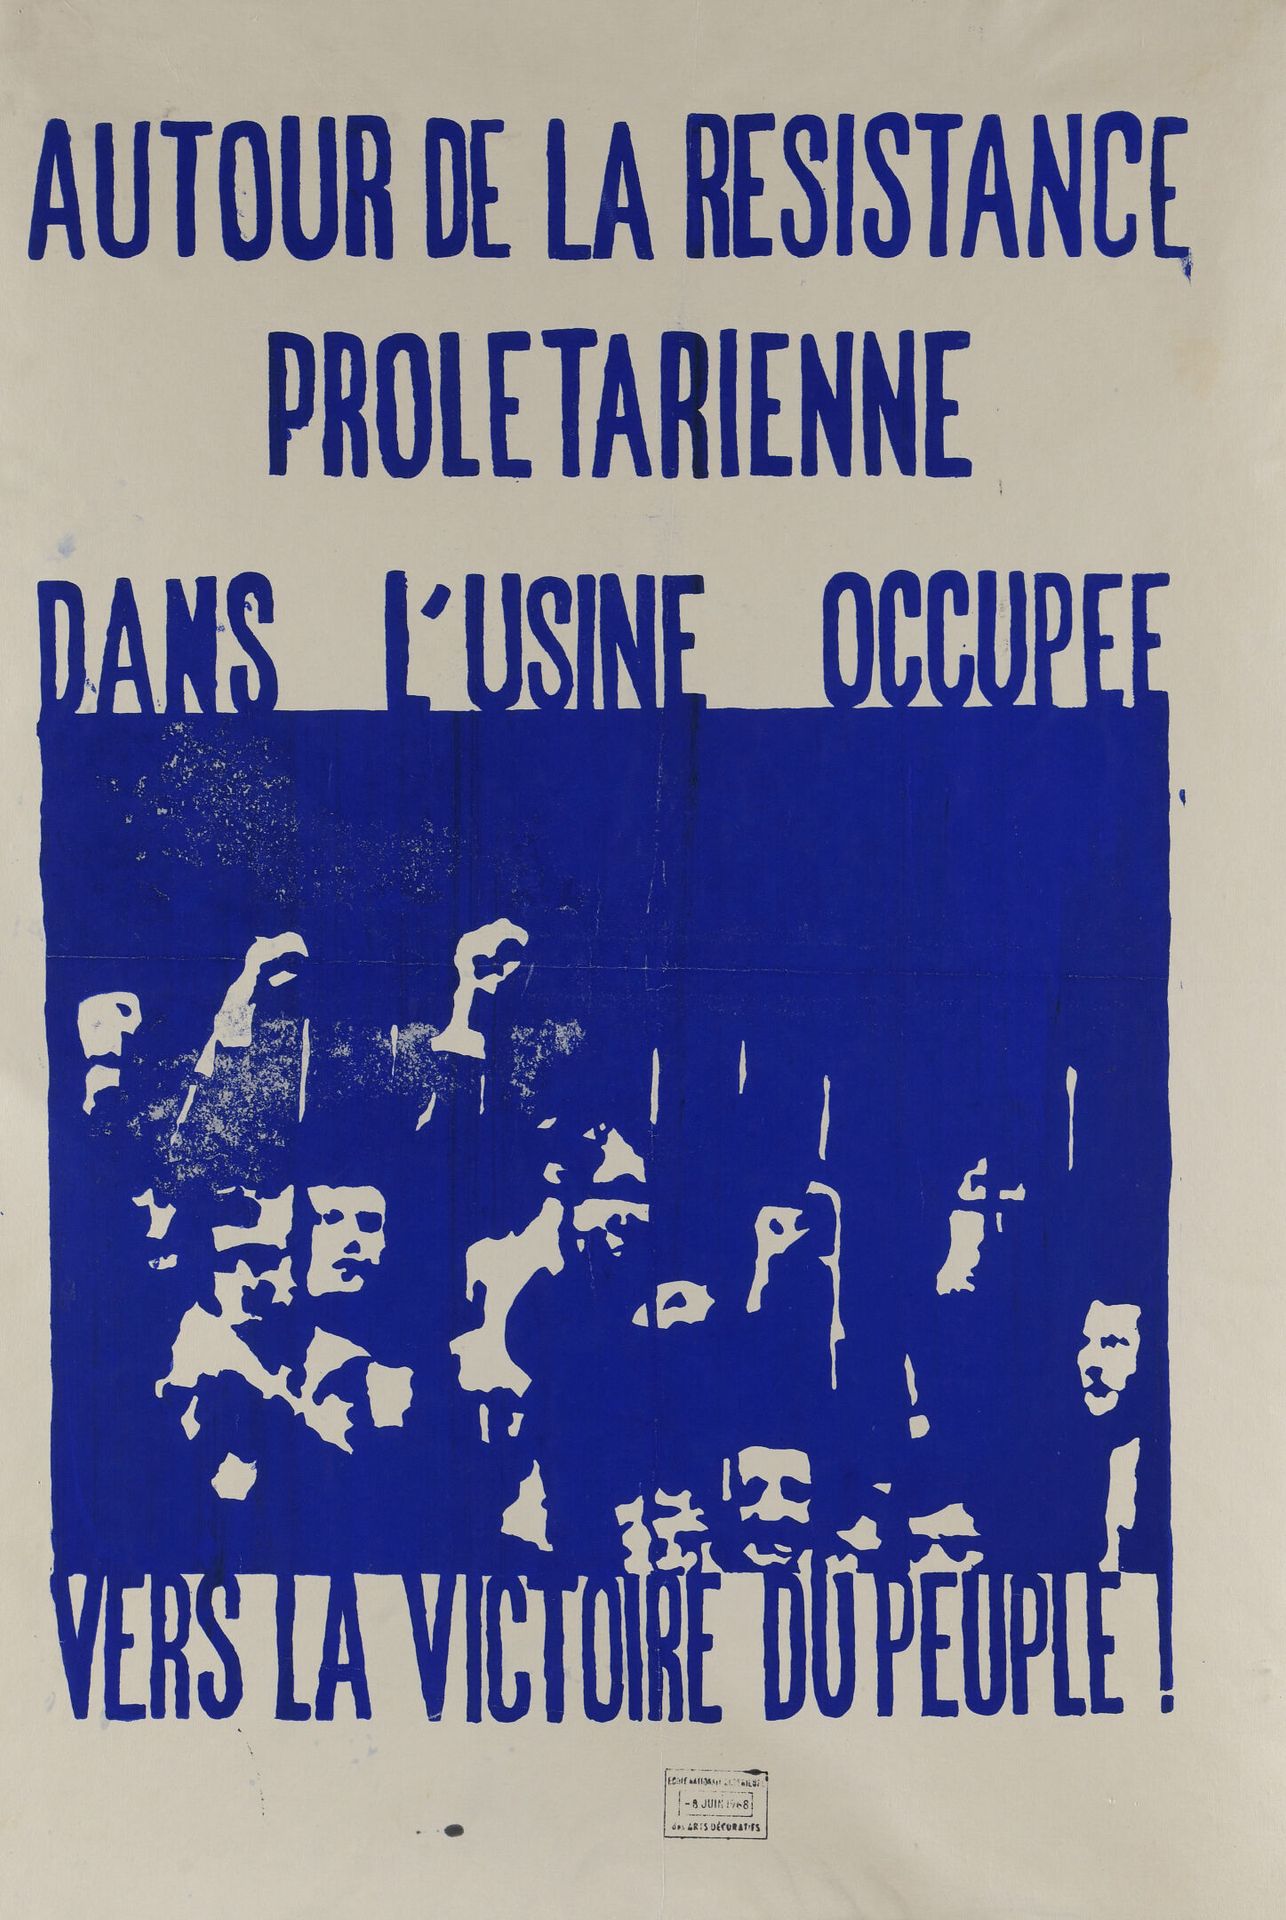 Null [Affiche de mai 1968]

École des Arts décoratifs

Autour de la résistance p&hellip;